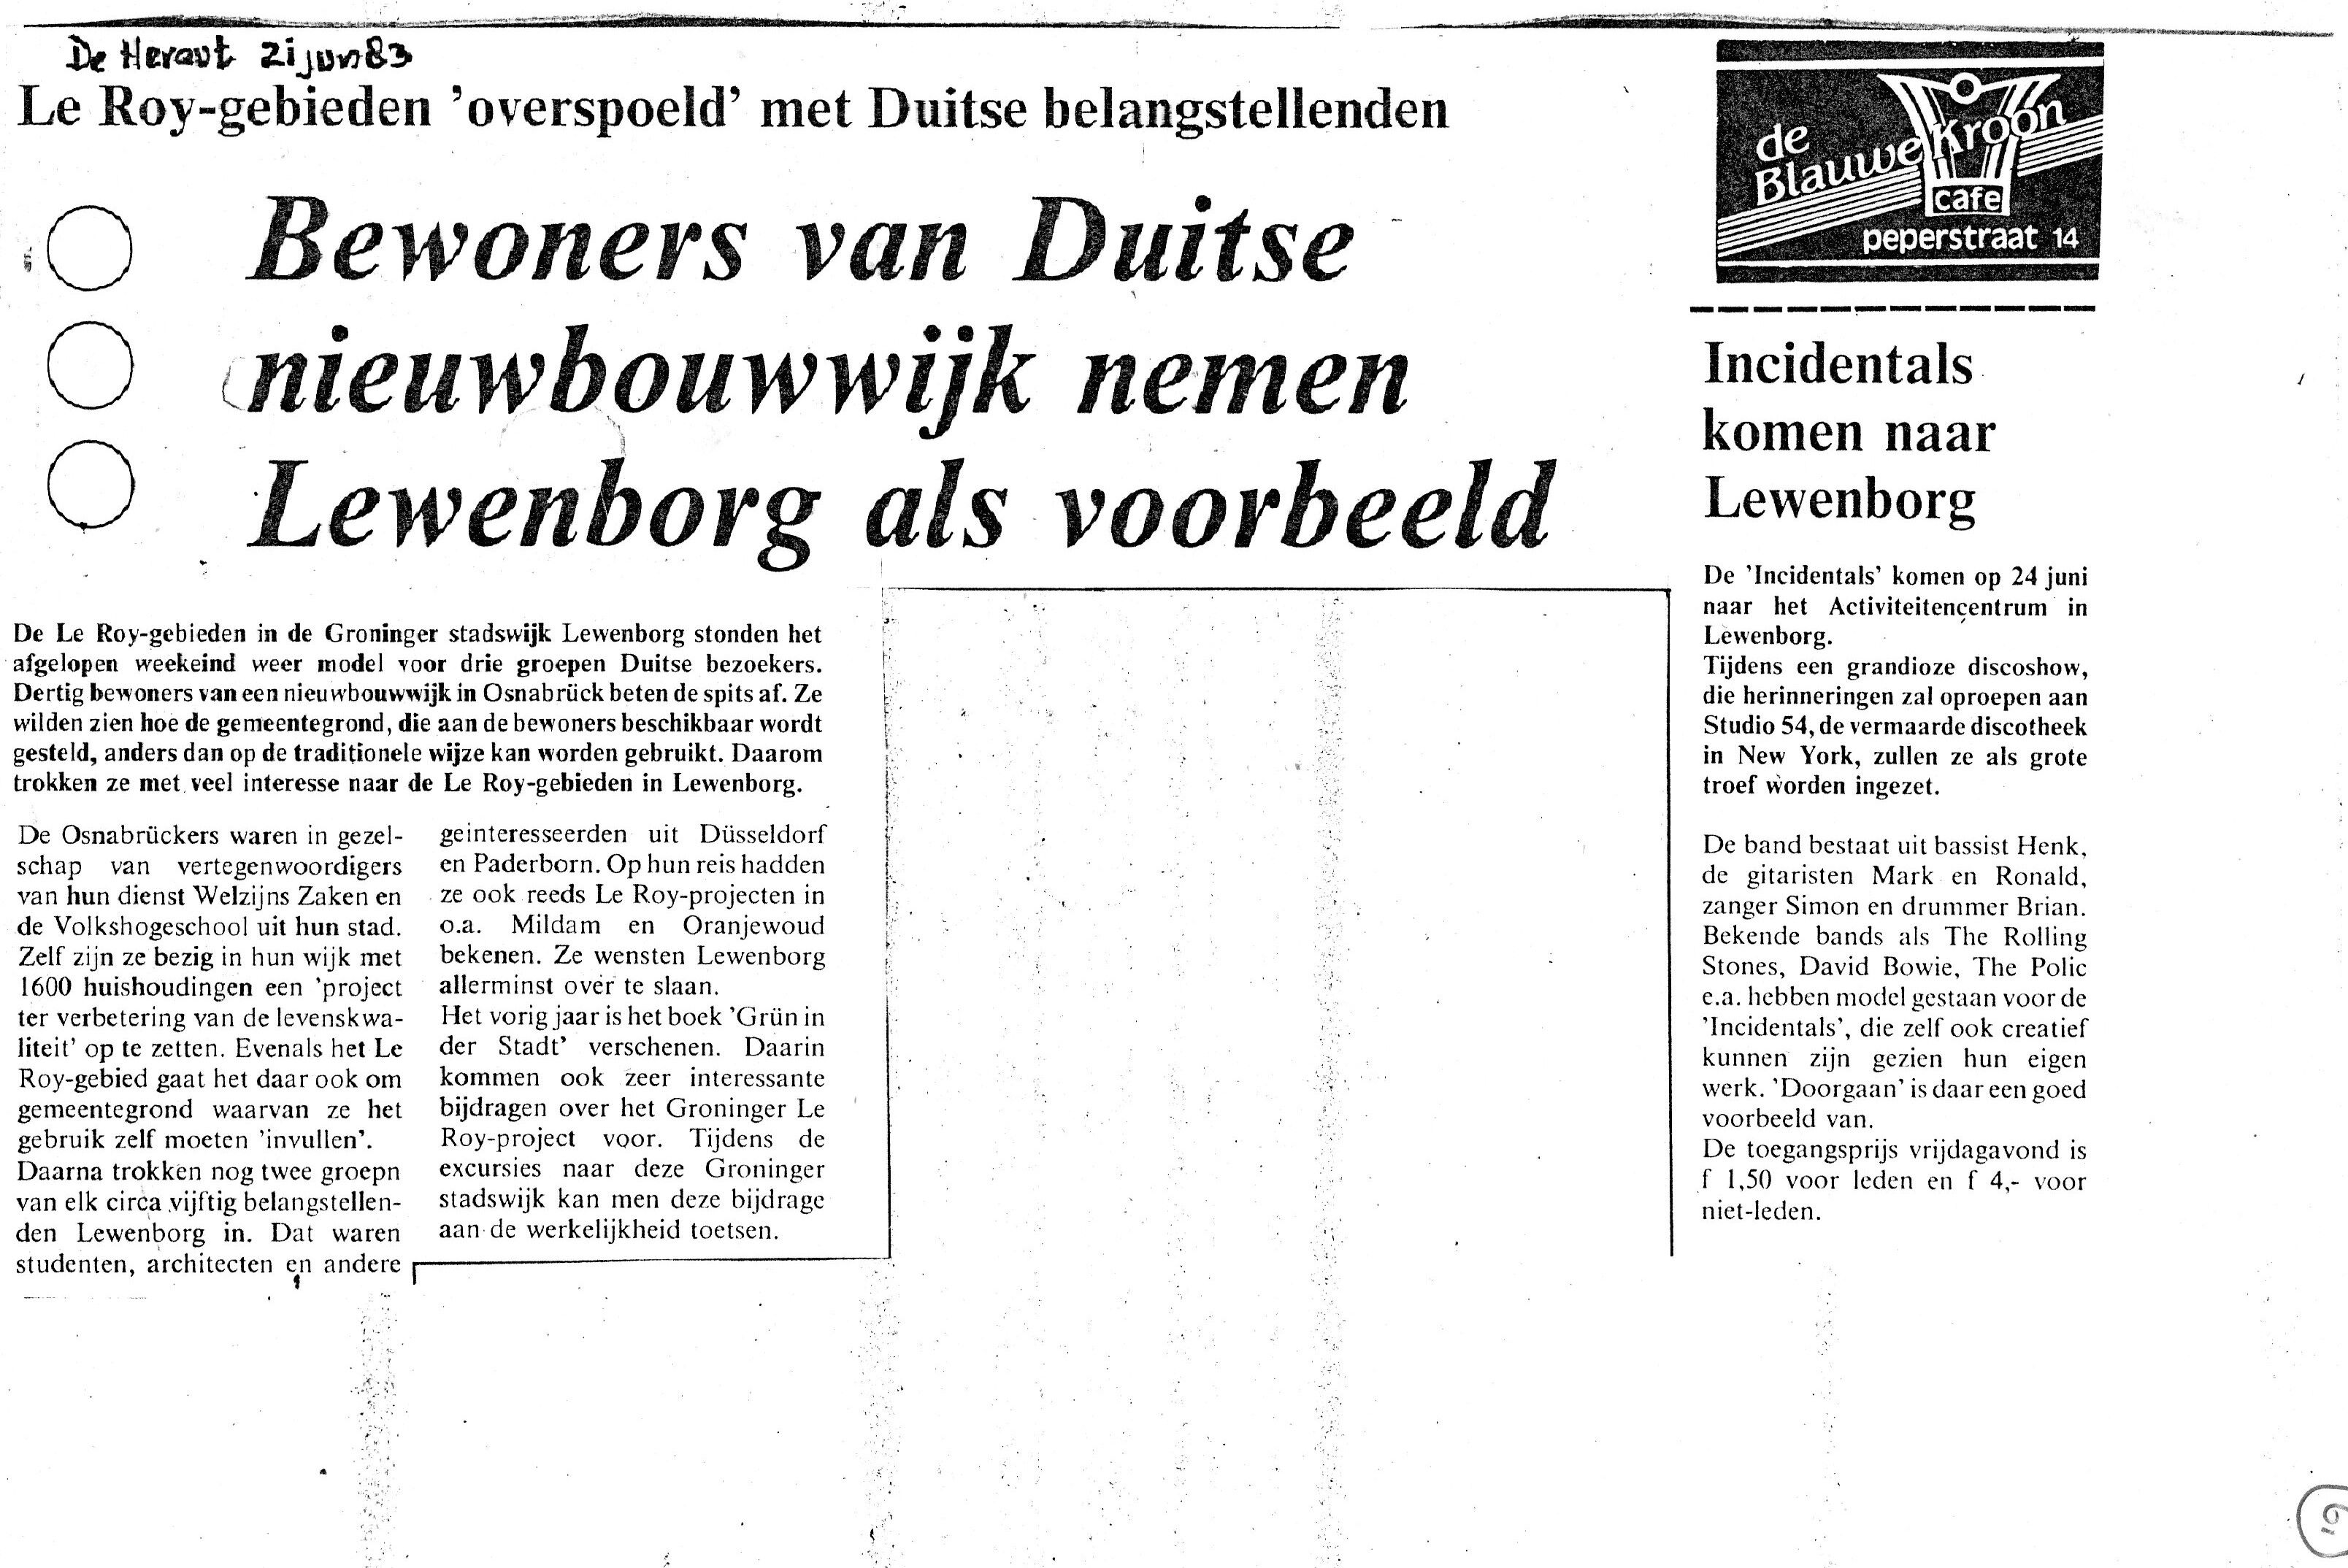 19830621_Bewoners_van_Duitse_Nieuwbouwwijk_nemen_Lewenborg_als_voorbeeld.jpg